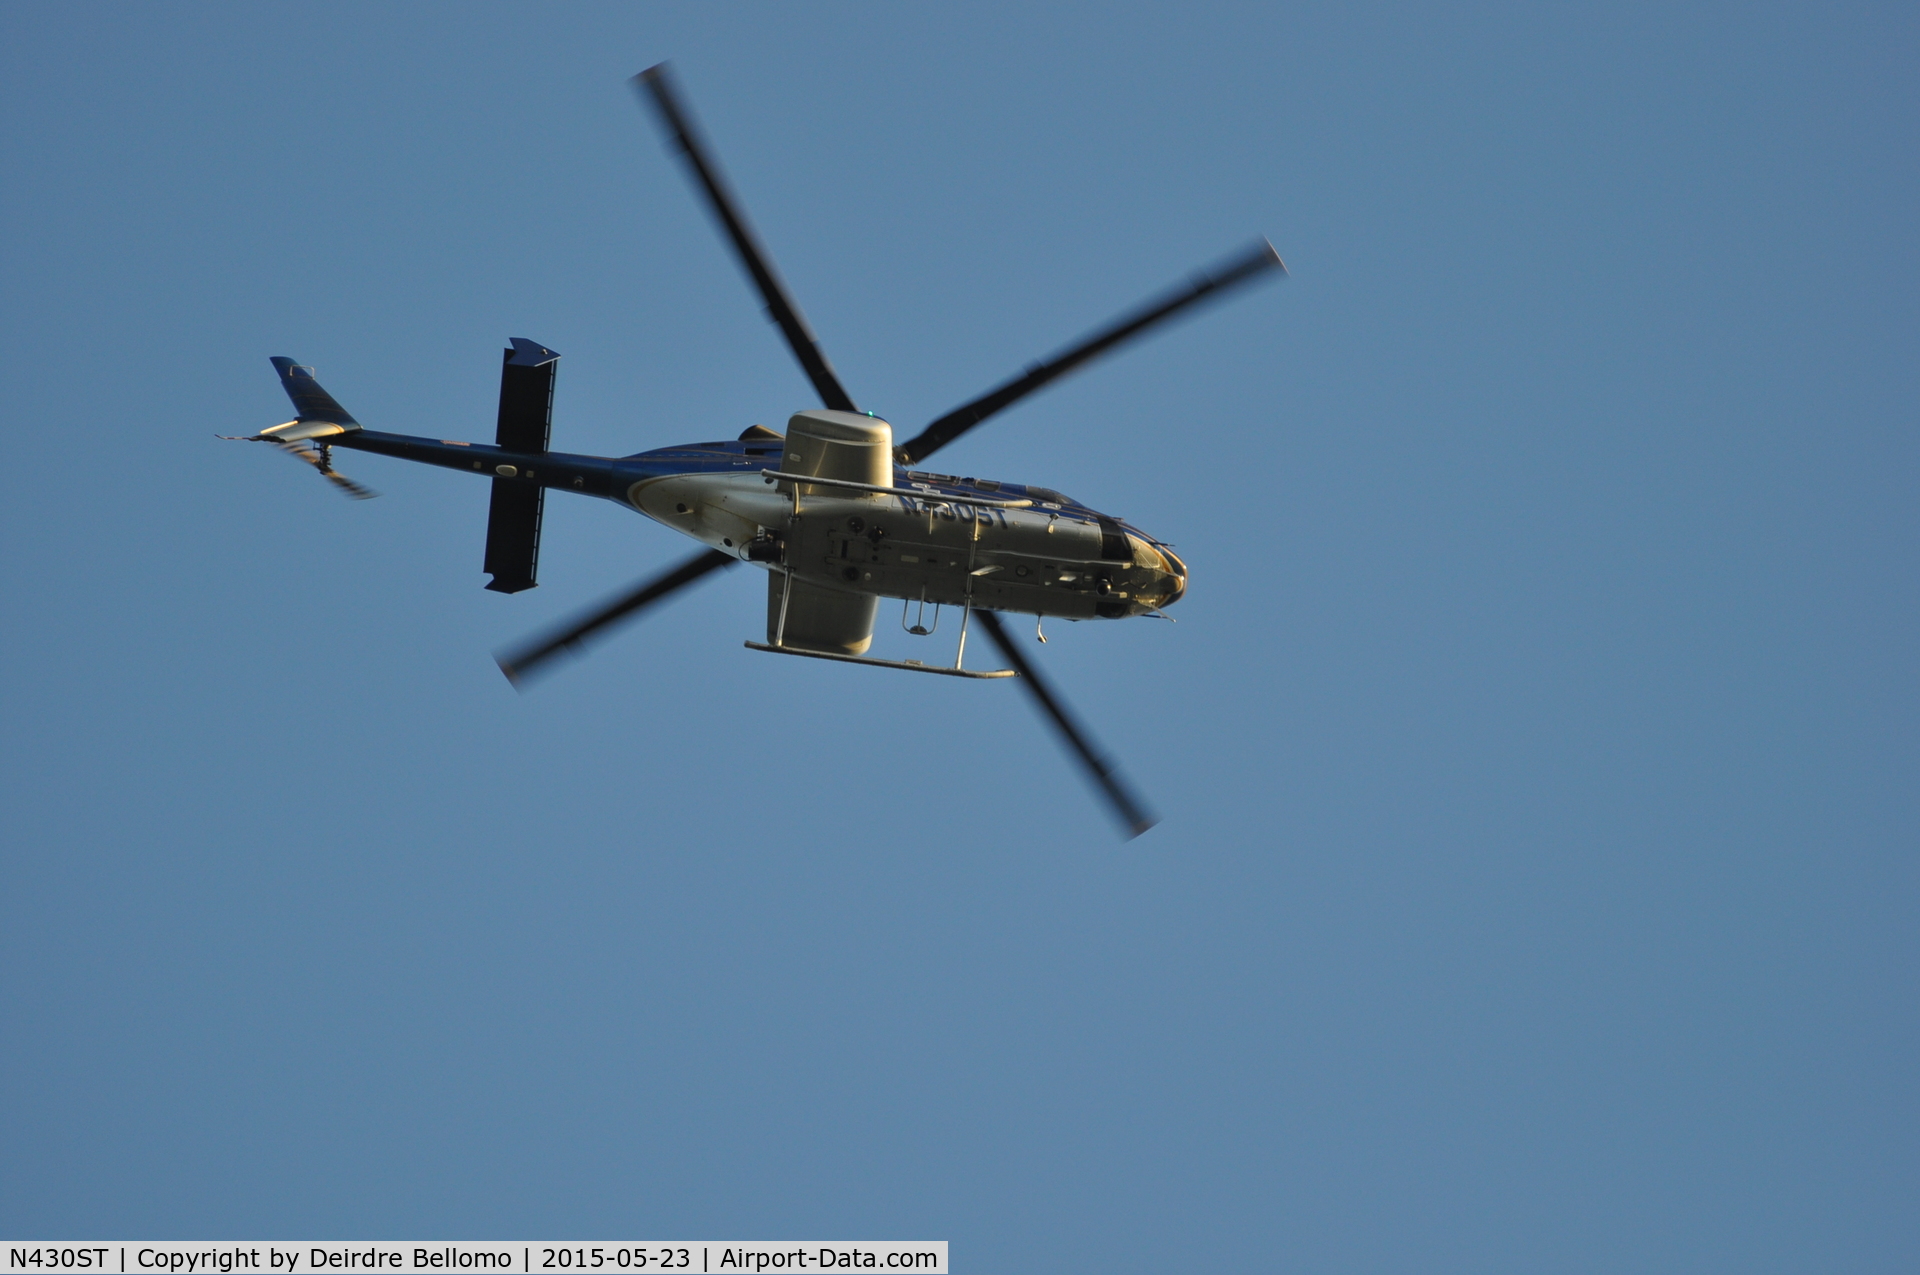 N430ST, 2000 Bell 430 C/N 49071, Taken over my home in Grosse Pointe Wooods , MI